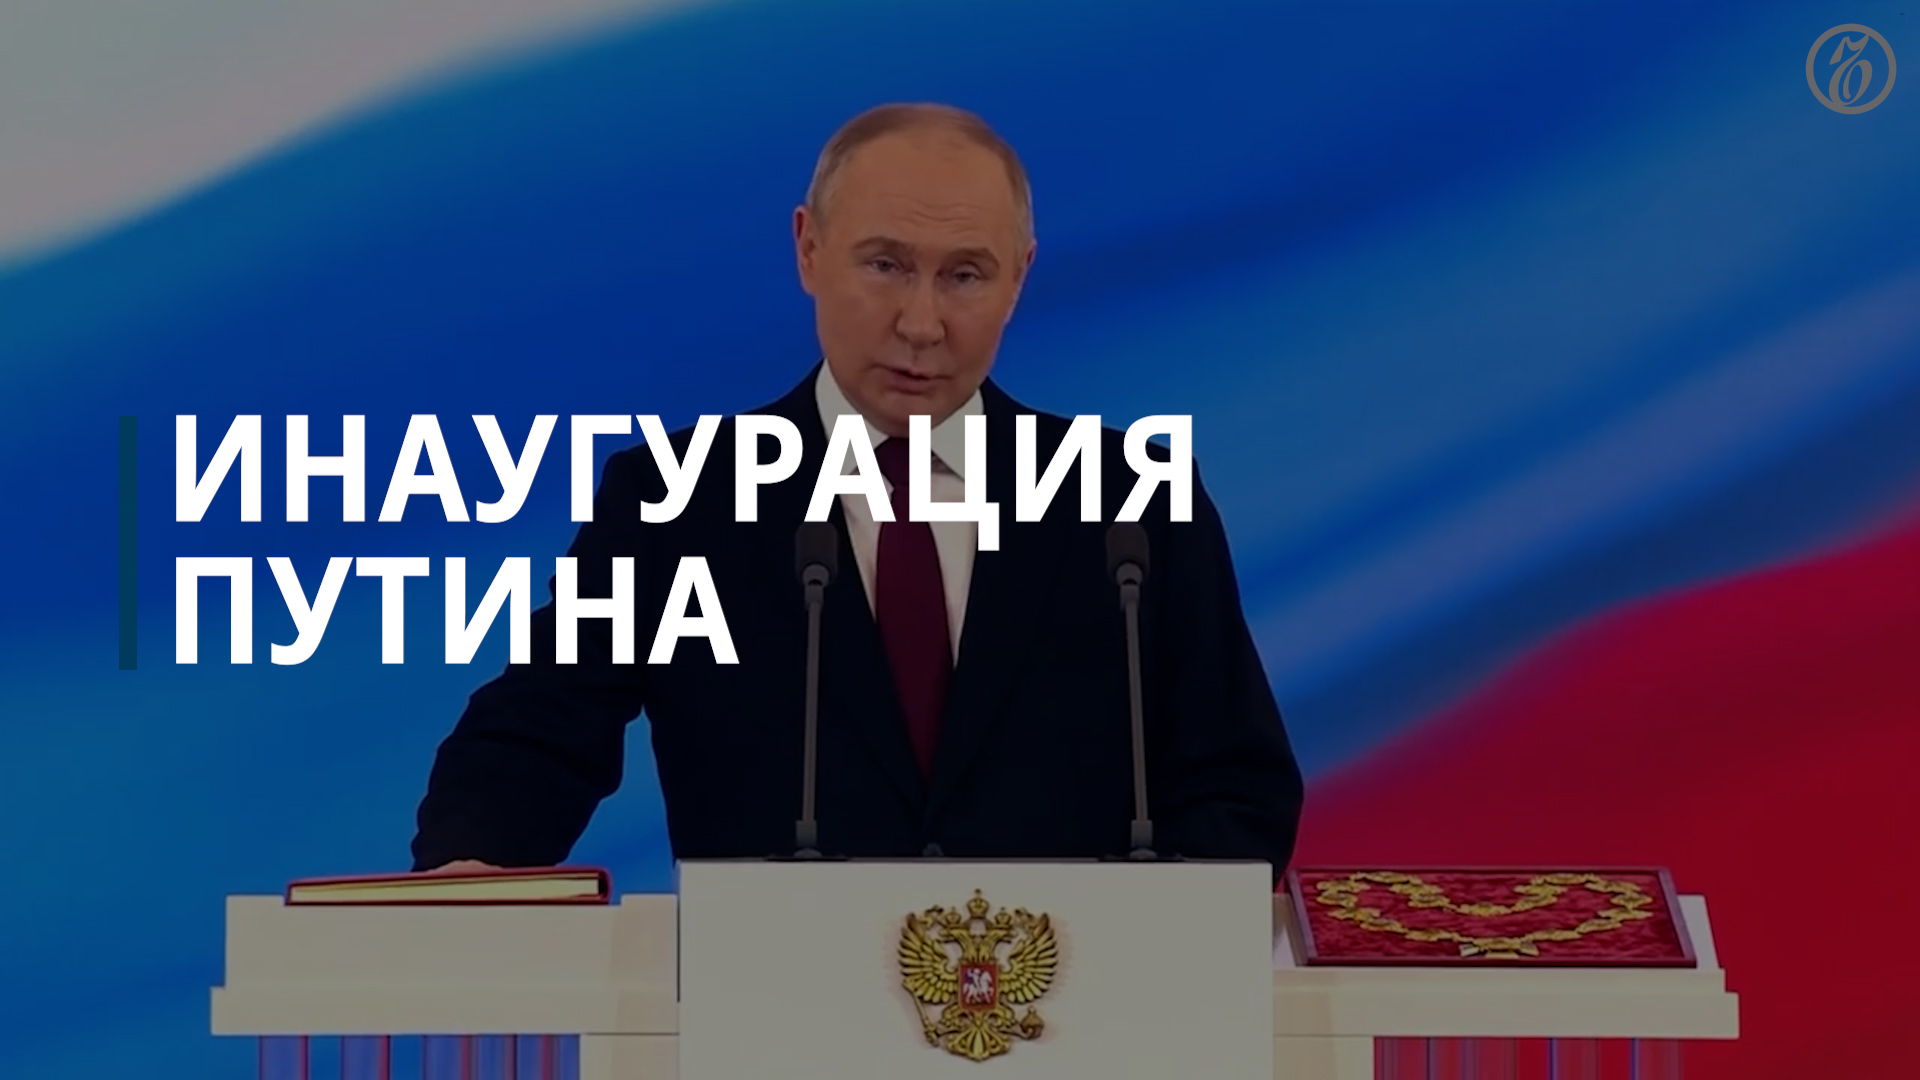 Владимир Путин в пятый раз вступил в должность президента России — Коммерсантъ